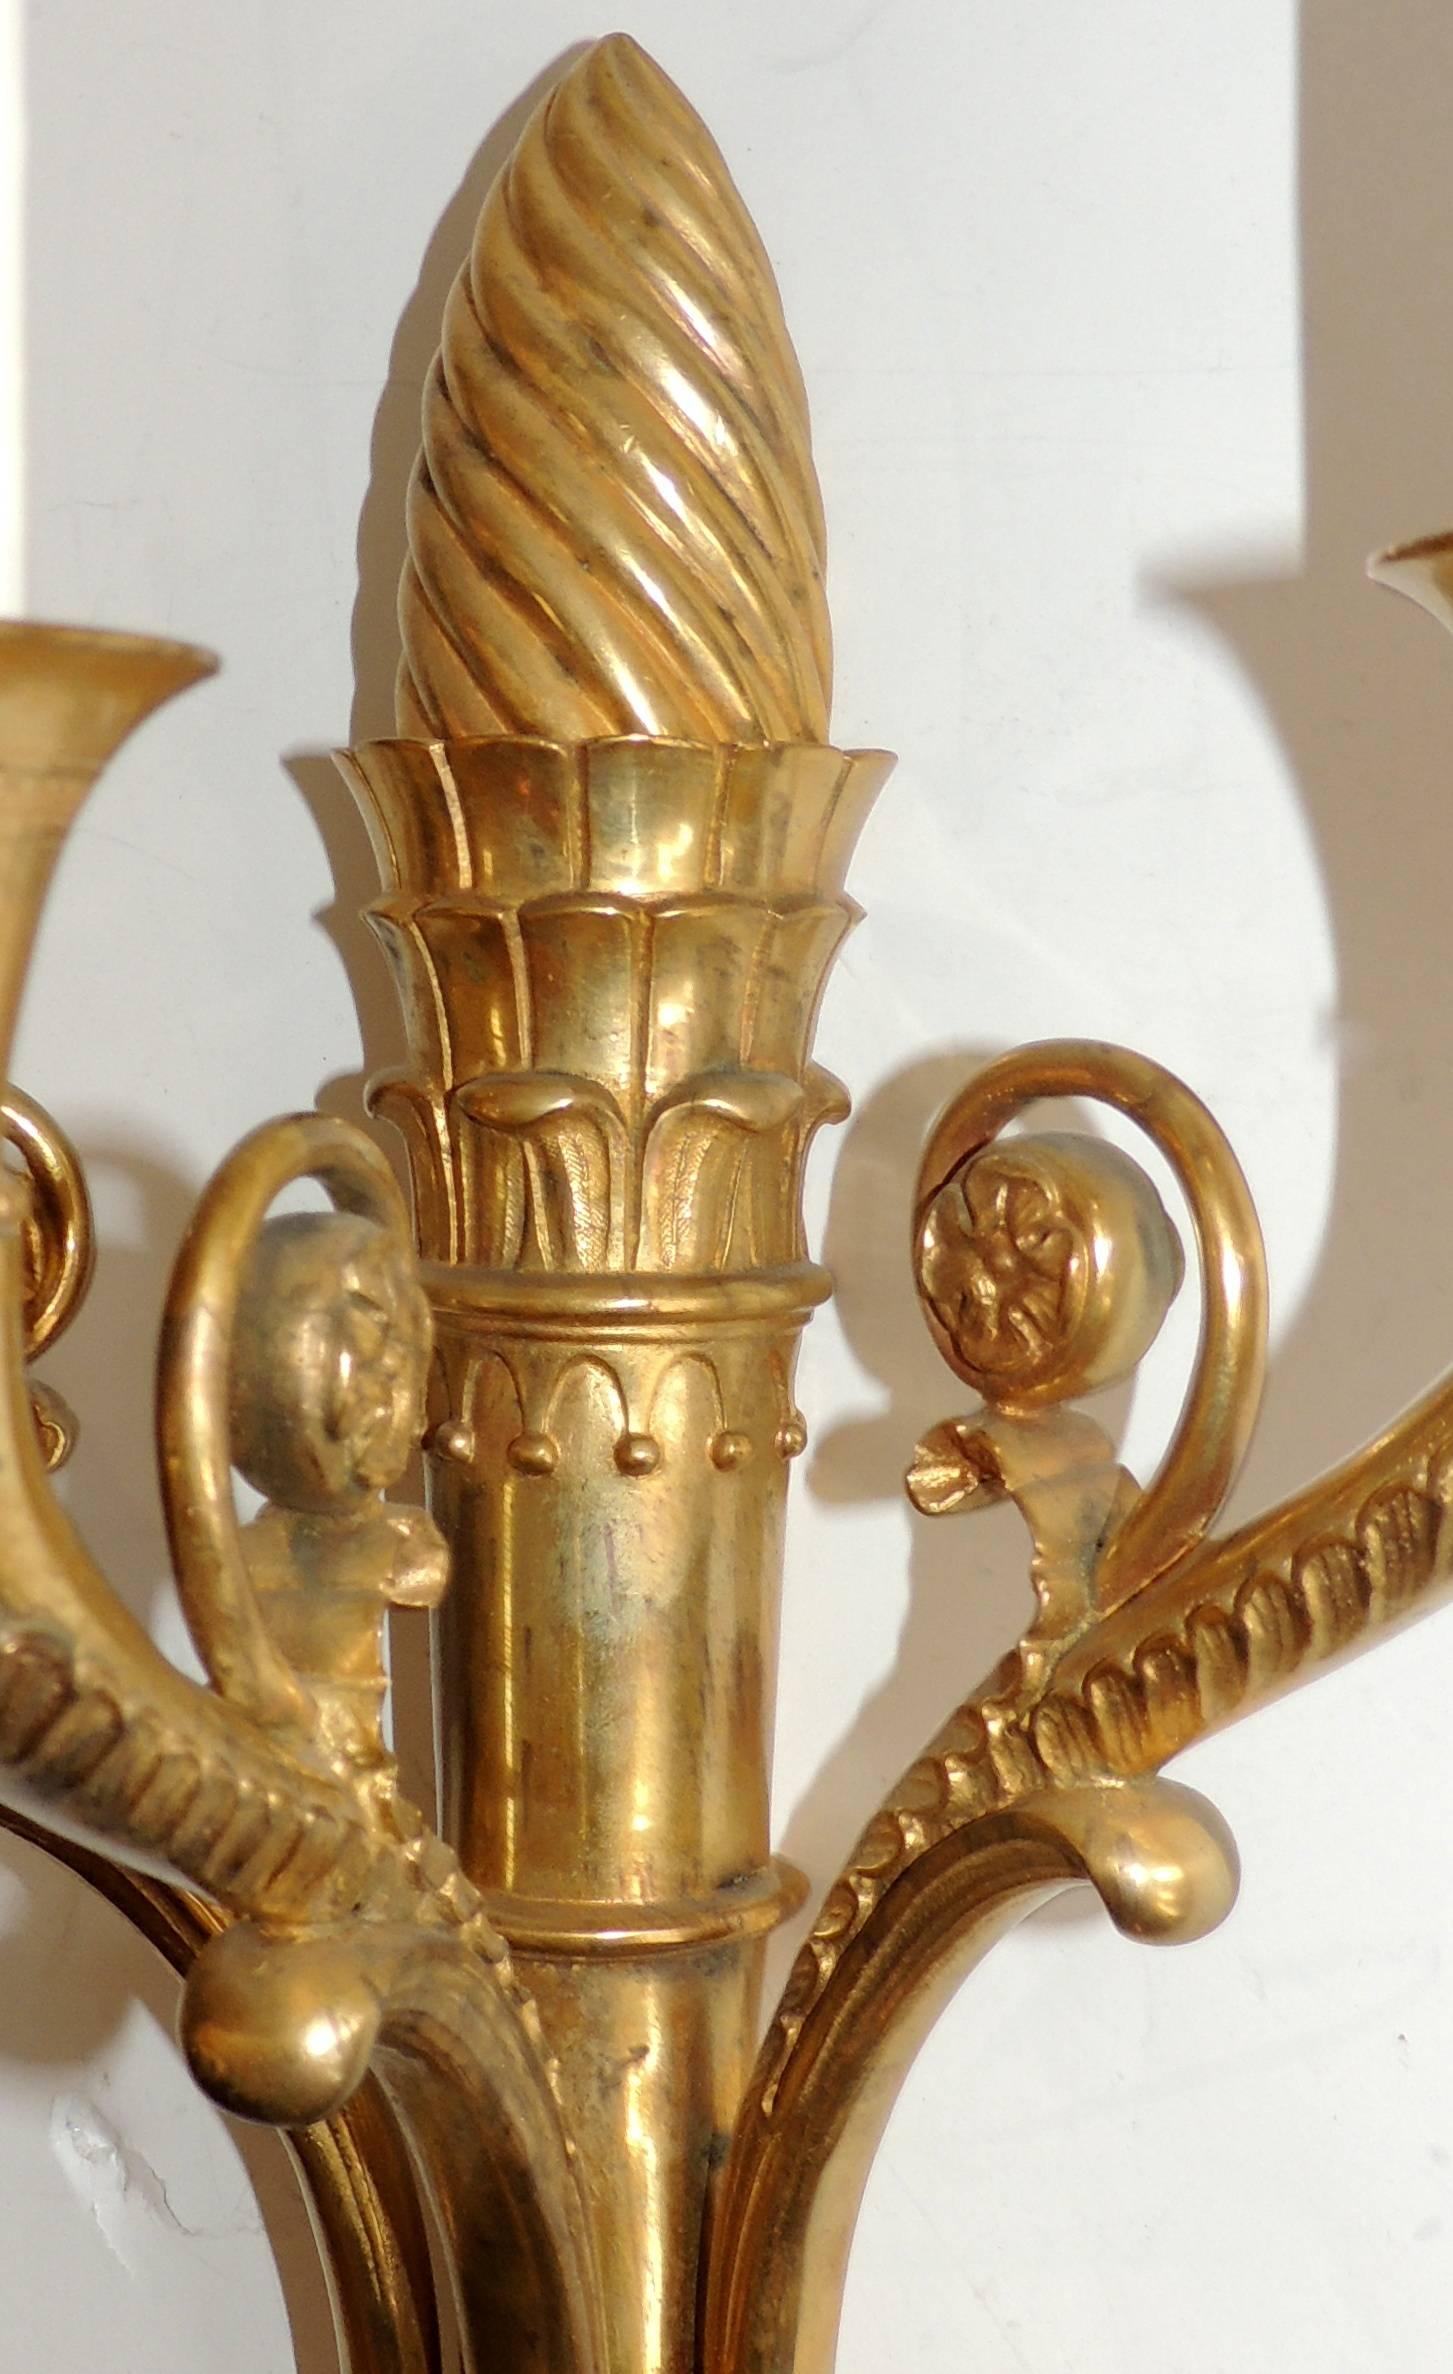 Une élégante paire d'appliques Régence / néoclassique de style Empire français, en bronze doré avec des têtes de lion et surmontées d'une couronne torsadée.

Mesure : 18,5 H x 10